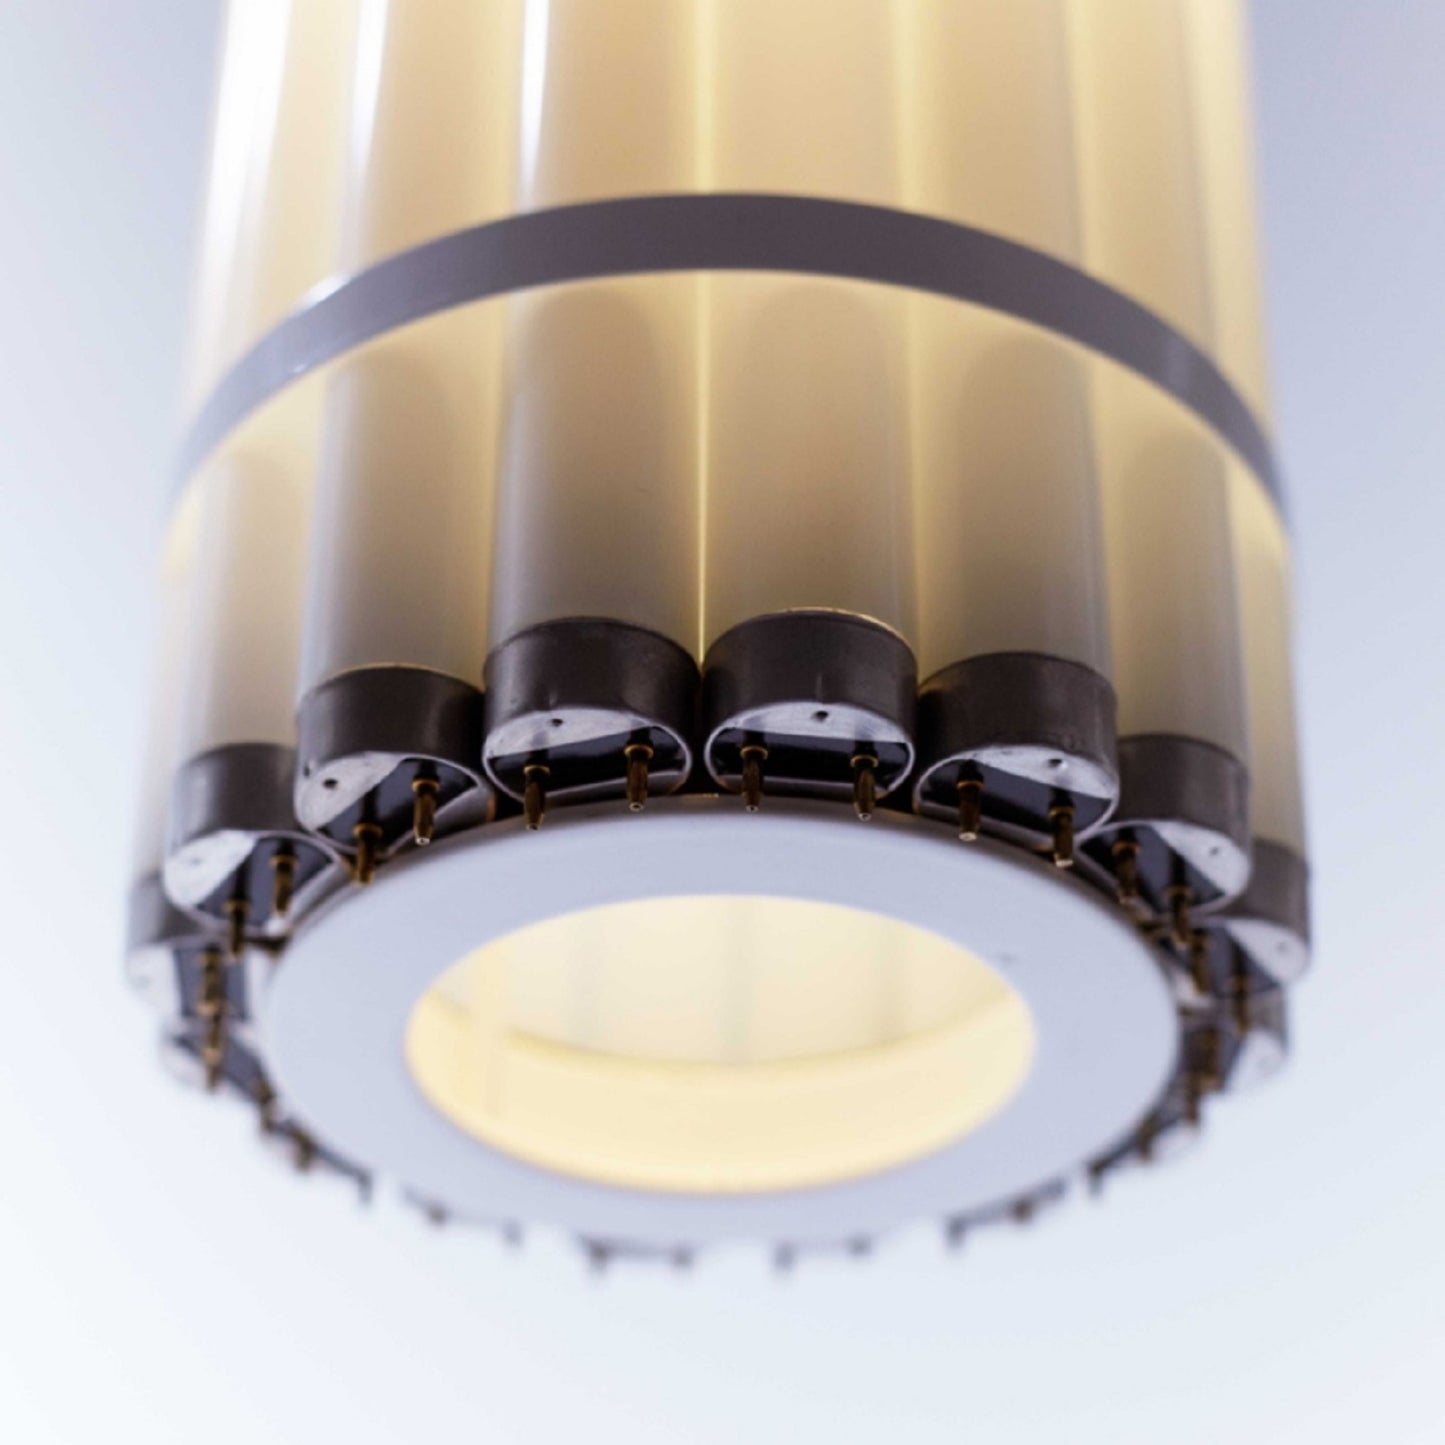 Castor Design Vertical Tube Light